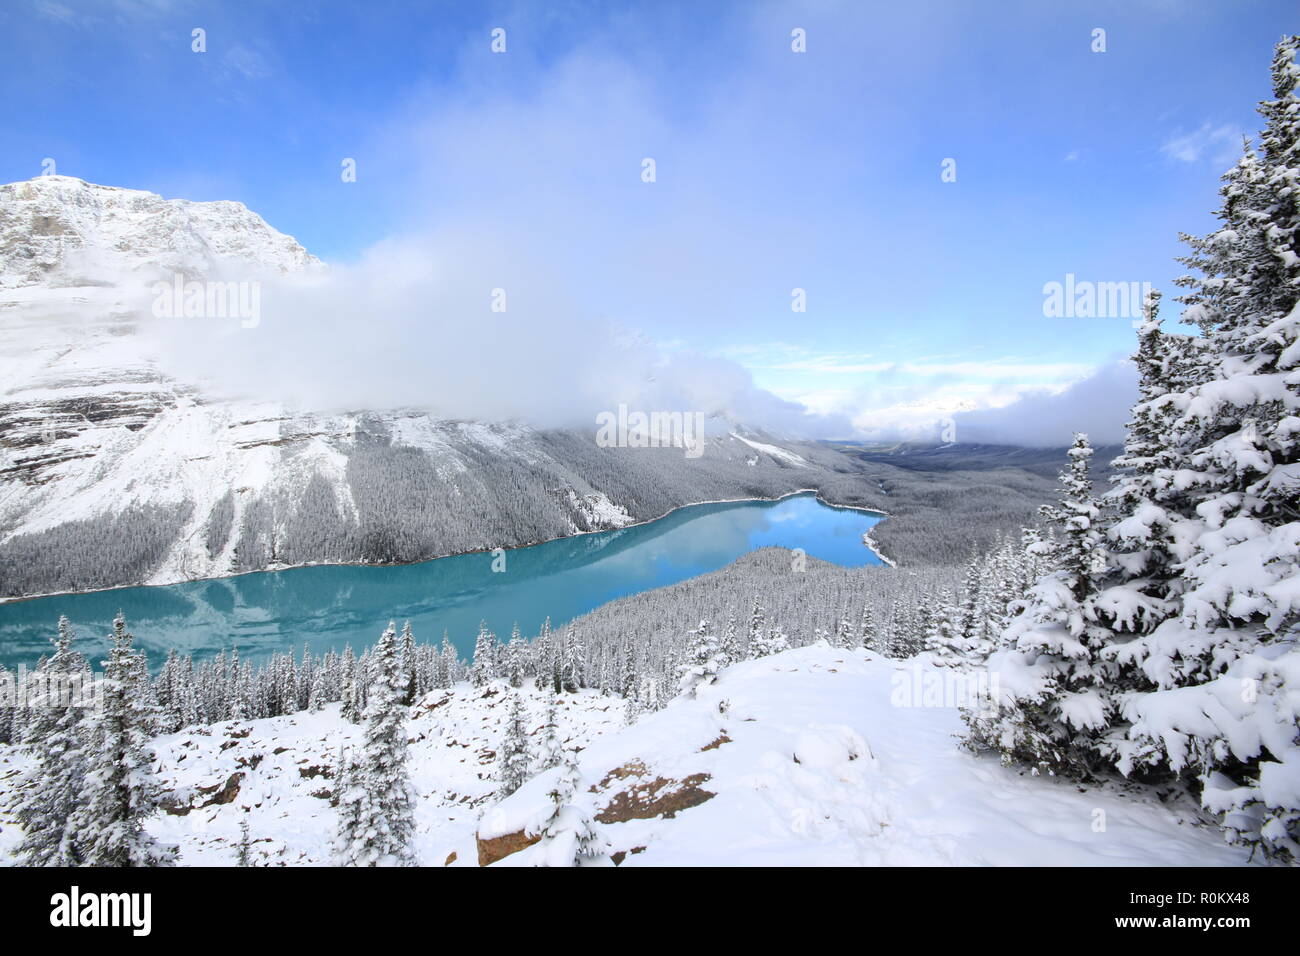 Spektakuläre winter Szene am Peyto Lake im Banff National Park, Kanada, mit Bergen und Bäumen von Schnee bedeckt. Bild der beliebteste Tour Attraktion. Stockfoto